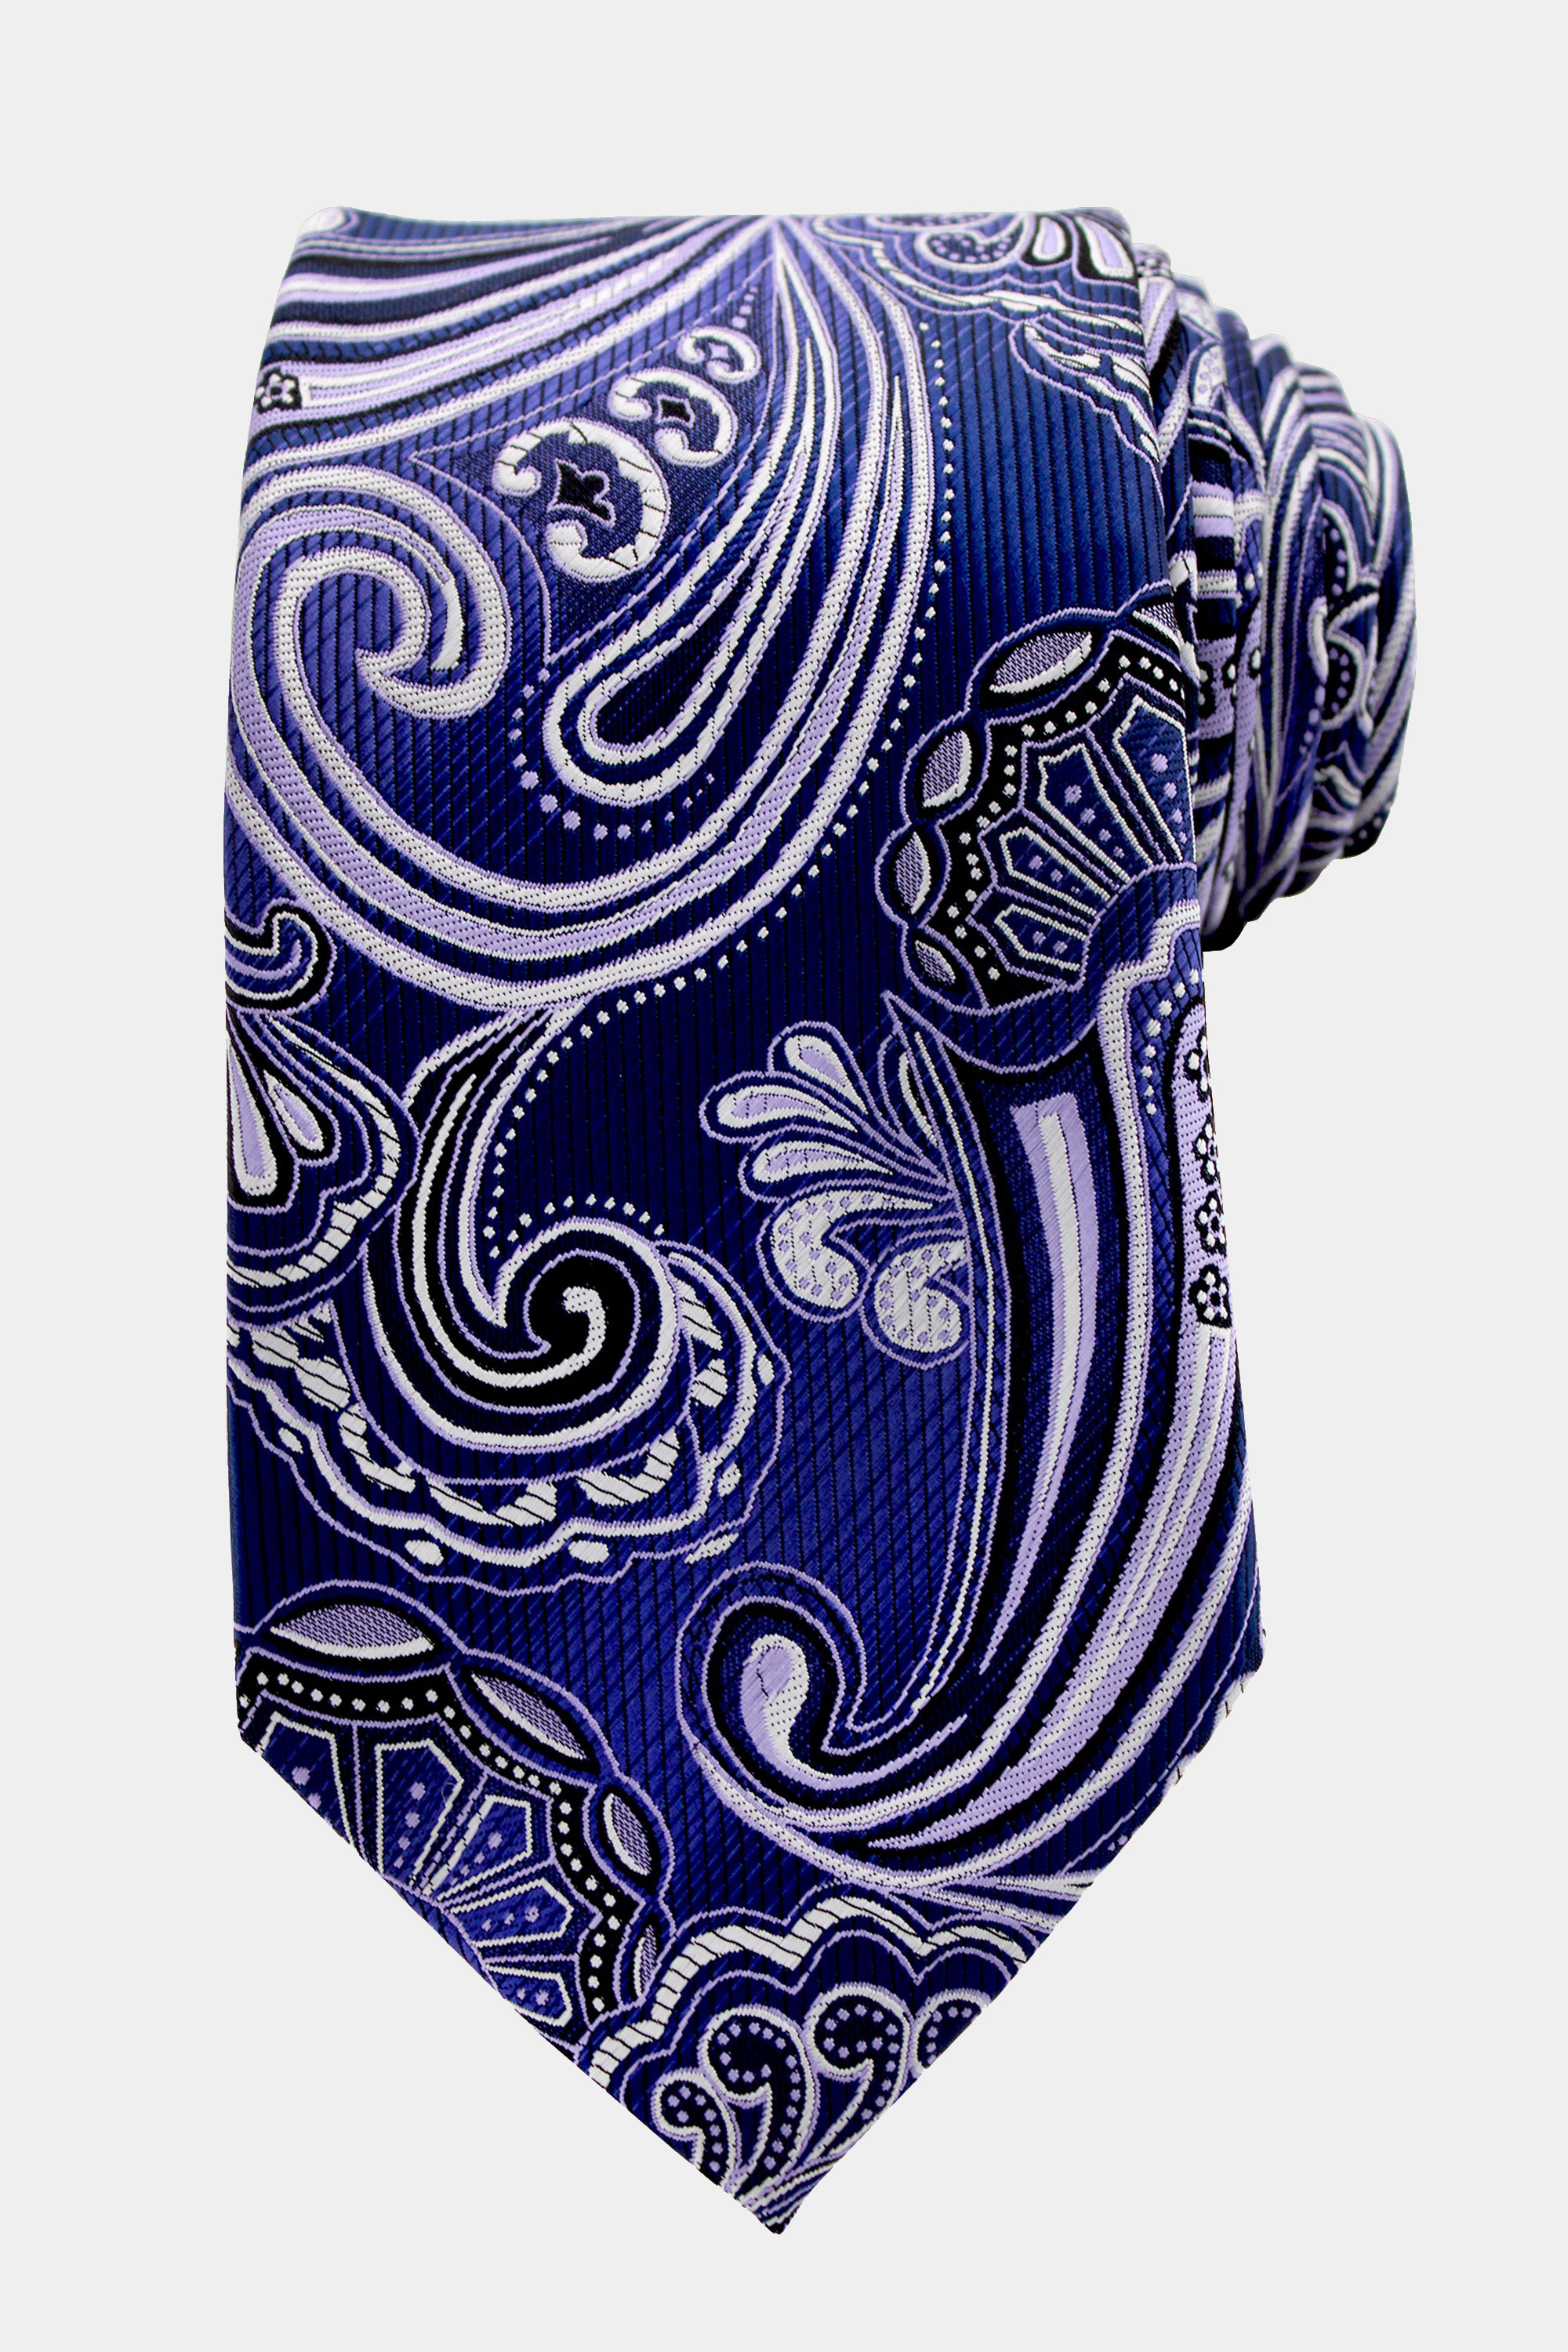 Cobalt-Blue-Paisley-Tie-from-Gentlemansguru.com_